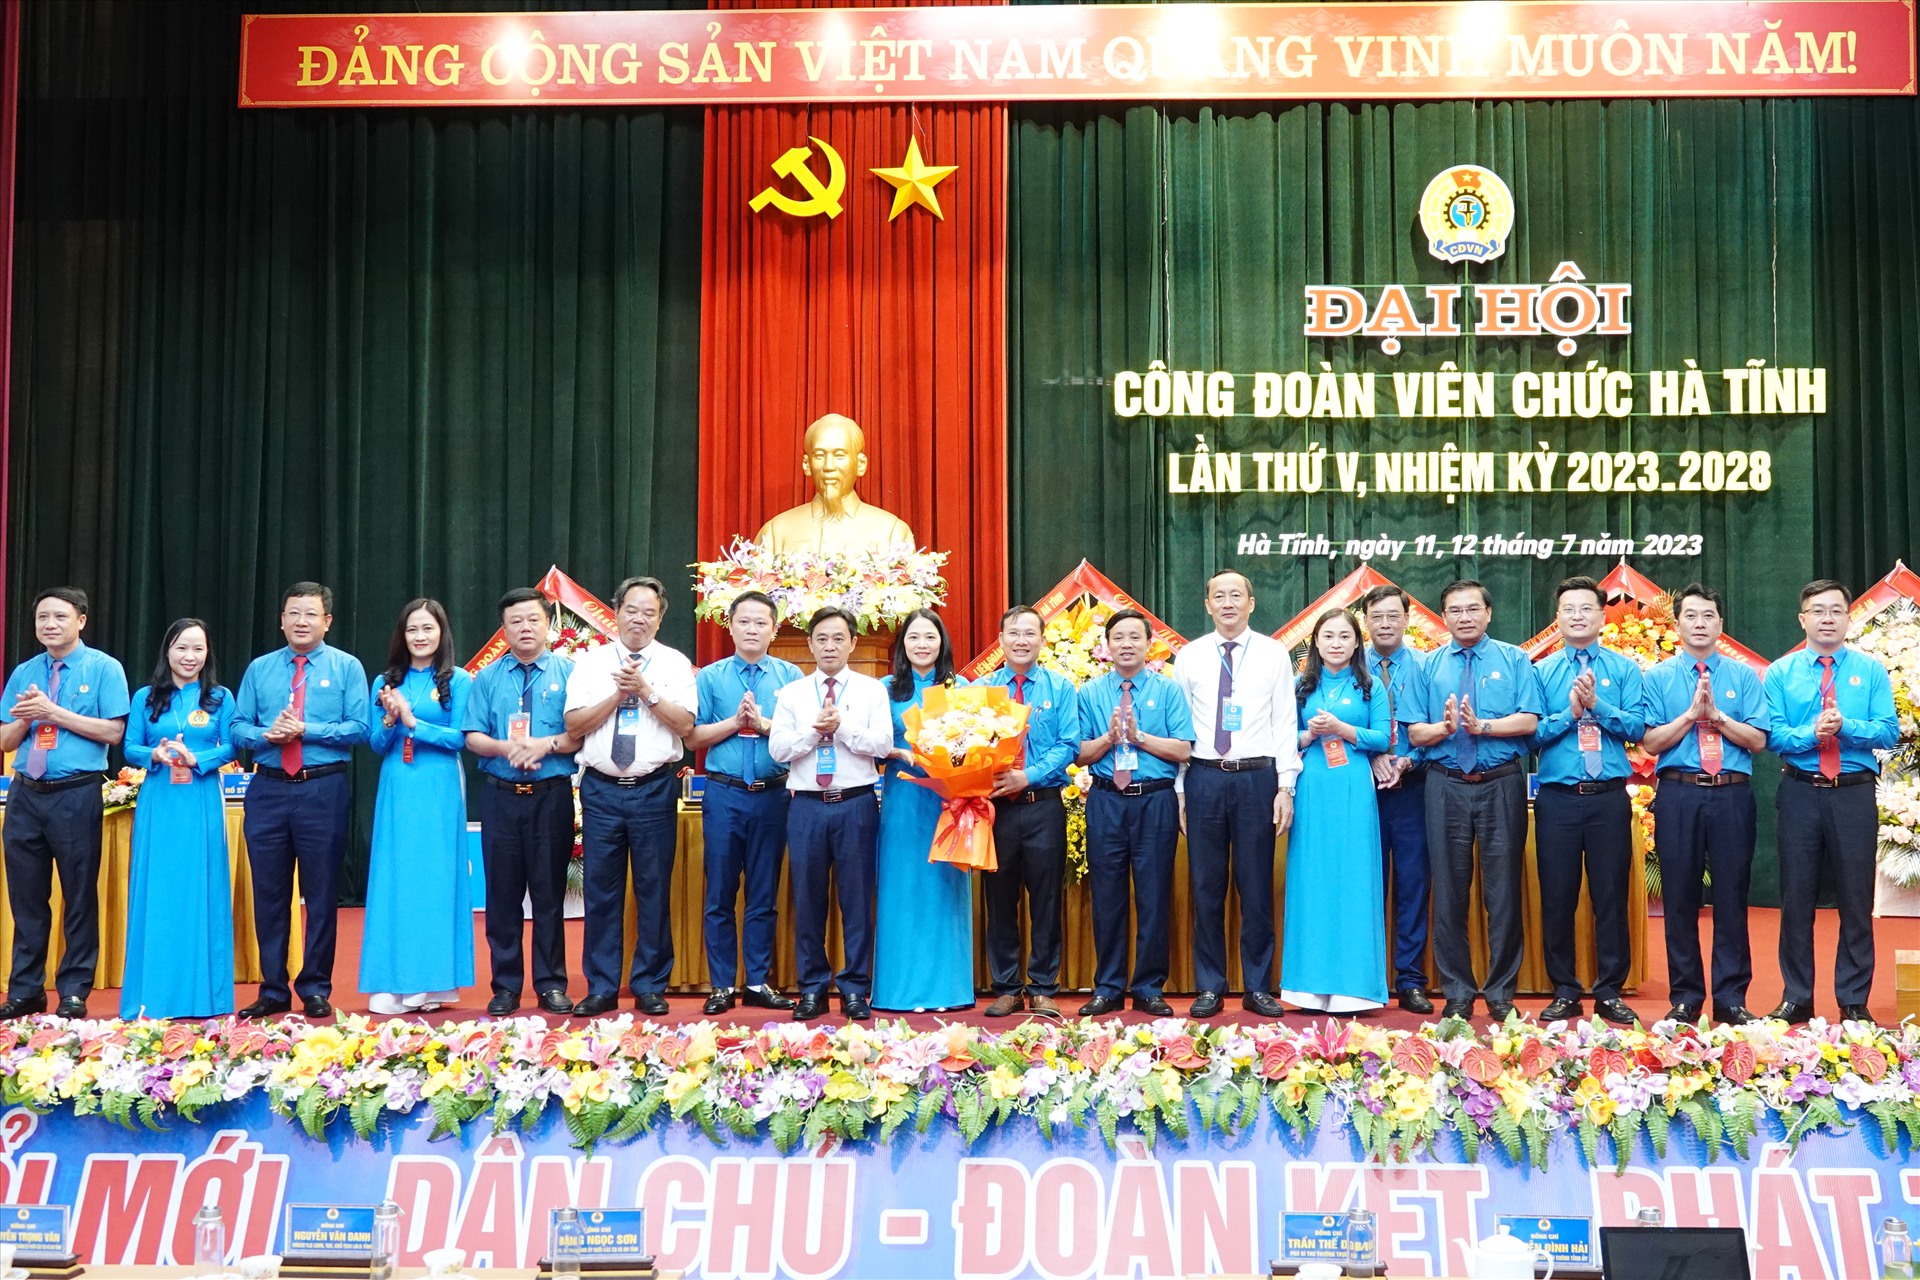 BCH Công đoàn Viên chức Hà Tĩnh nhiệm kỳ 2023 - 2028 ra mắt nhận nhiệm vụ. Ảnh: Trần Tuấn.